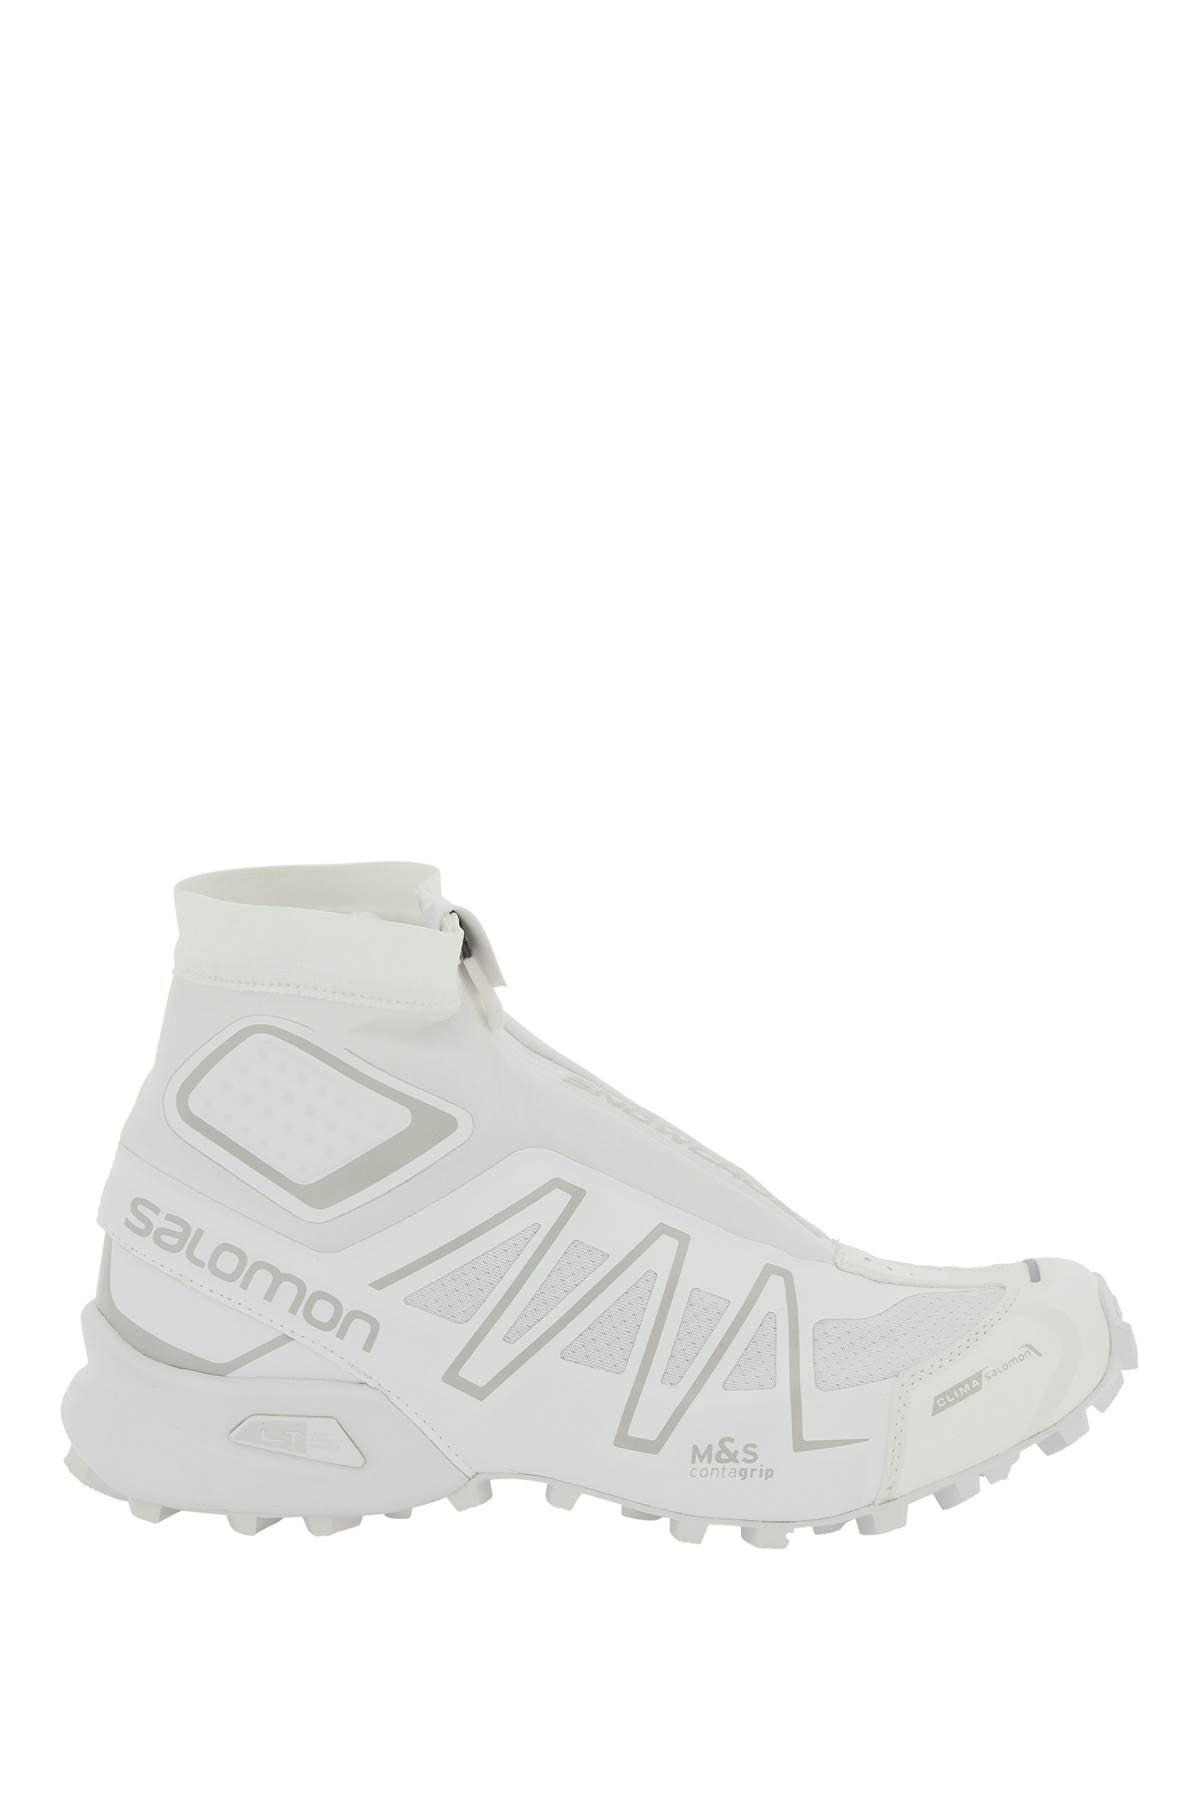 Salomon 'snowcross' Sneakers in White for Men | Lyst